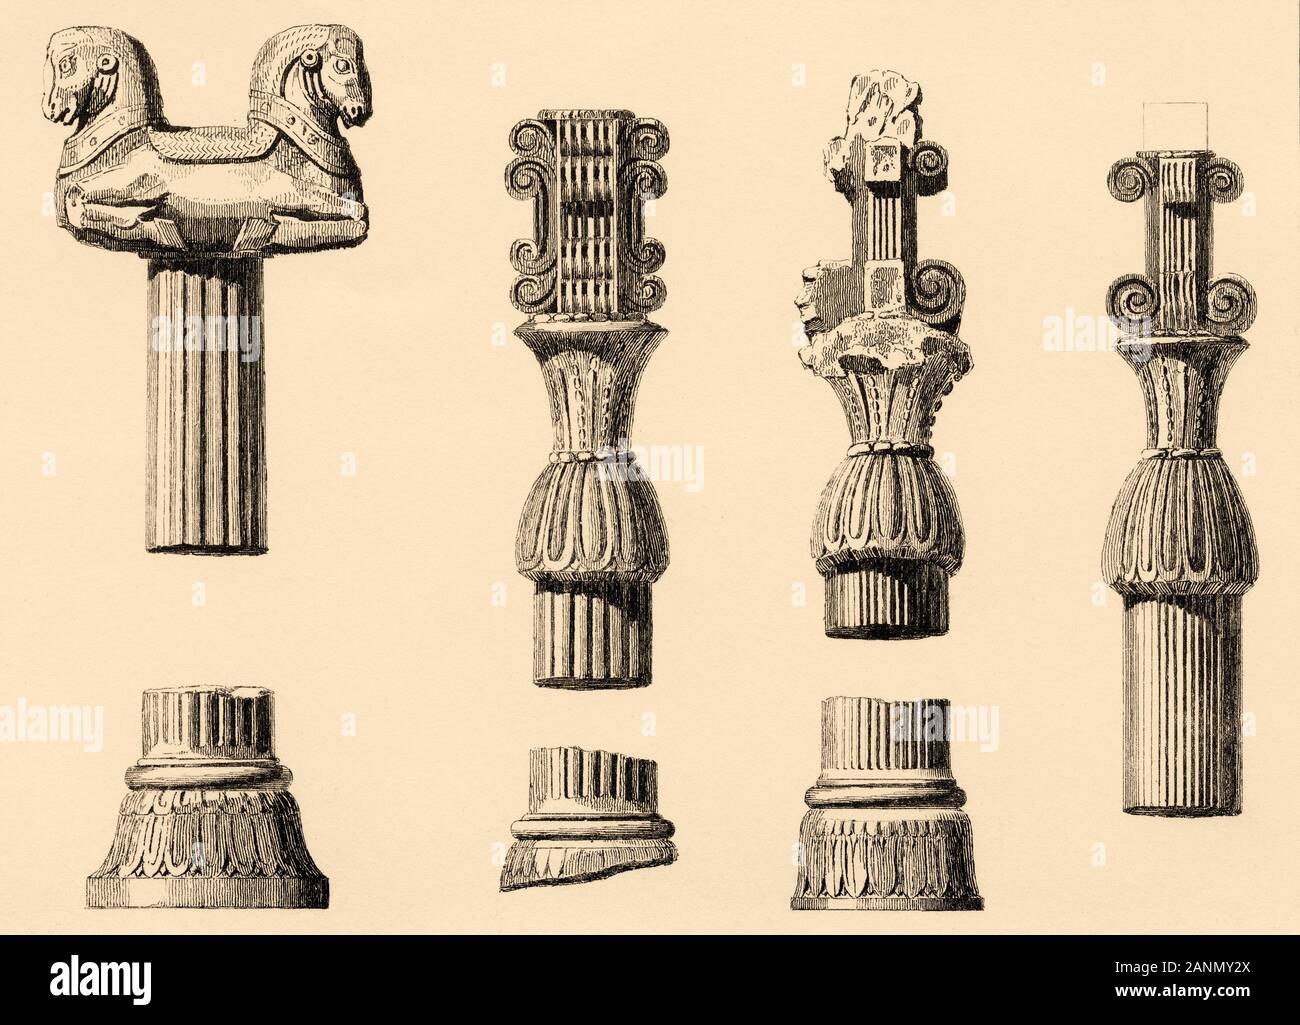 Dettaglio dei diversi elementi architettonici. Persepolis cerimoniale di capitale dell impero achemenide. Far provincia. L'Iran. Vecchio di acciaio inciso antica stampa Foto Stock